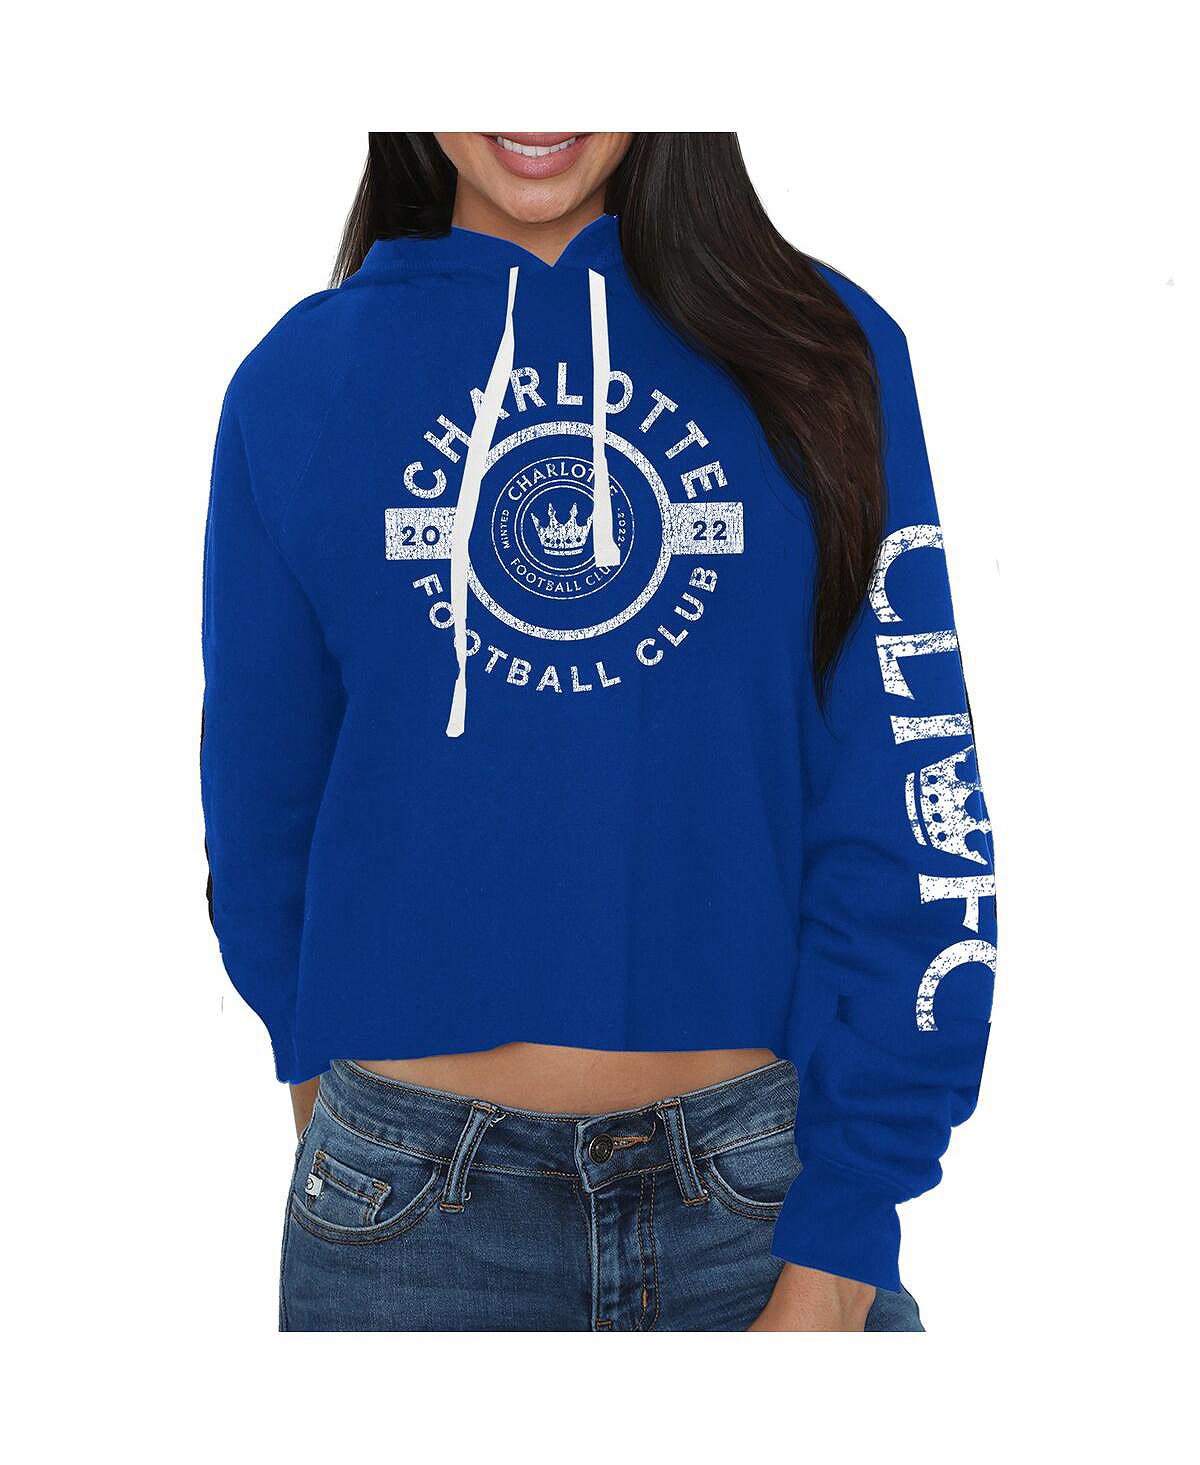 цена Женский укороченный пуловер с капюшоном синего цвета Charlotte FC Original Retro Brand, синий